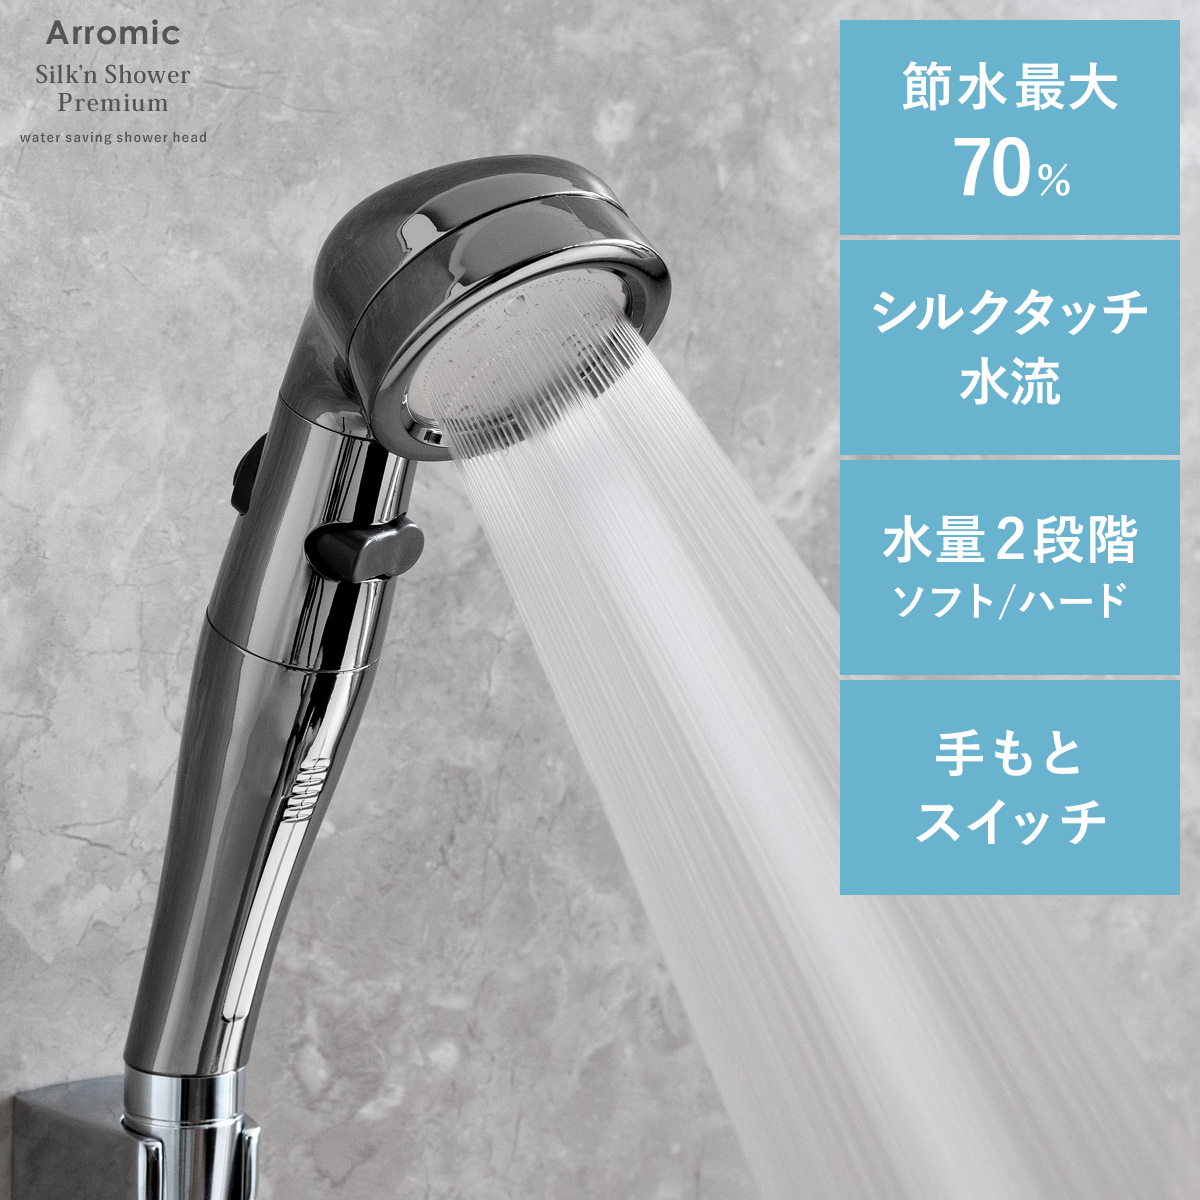 アラミック Silk'n Shower Premium(シルキンシャワー・プレミアム ...